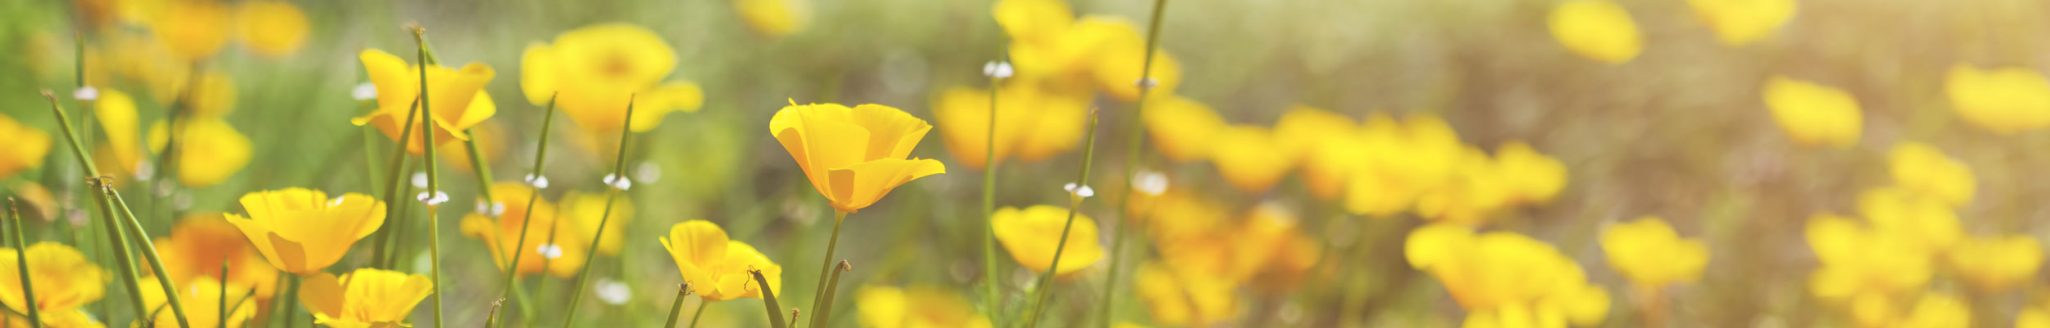 Blooming yellow prairie flowers